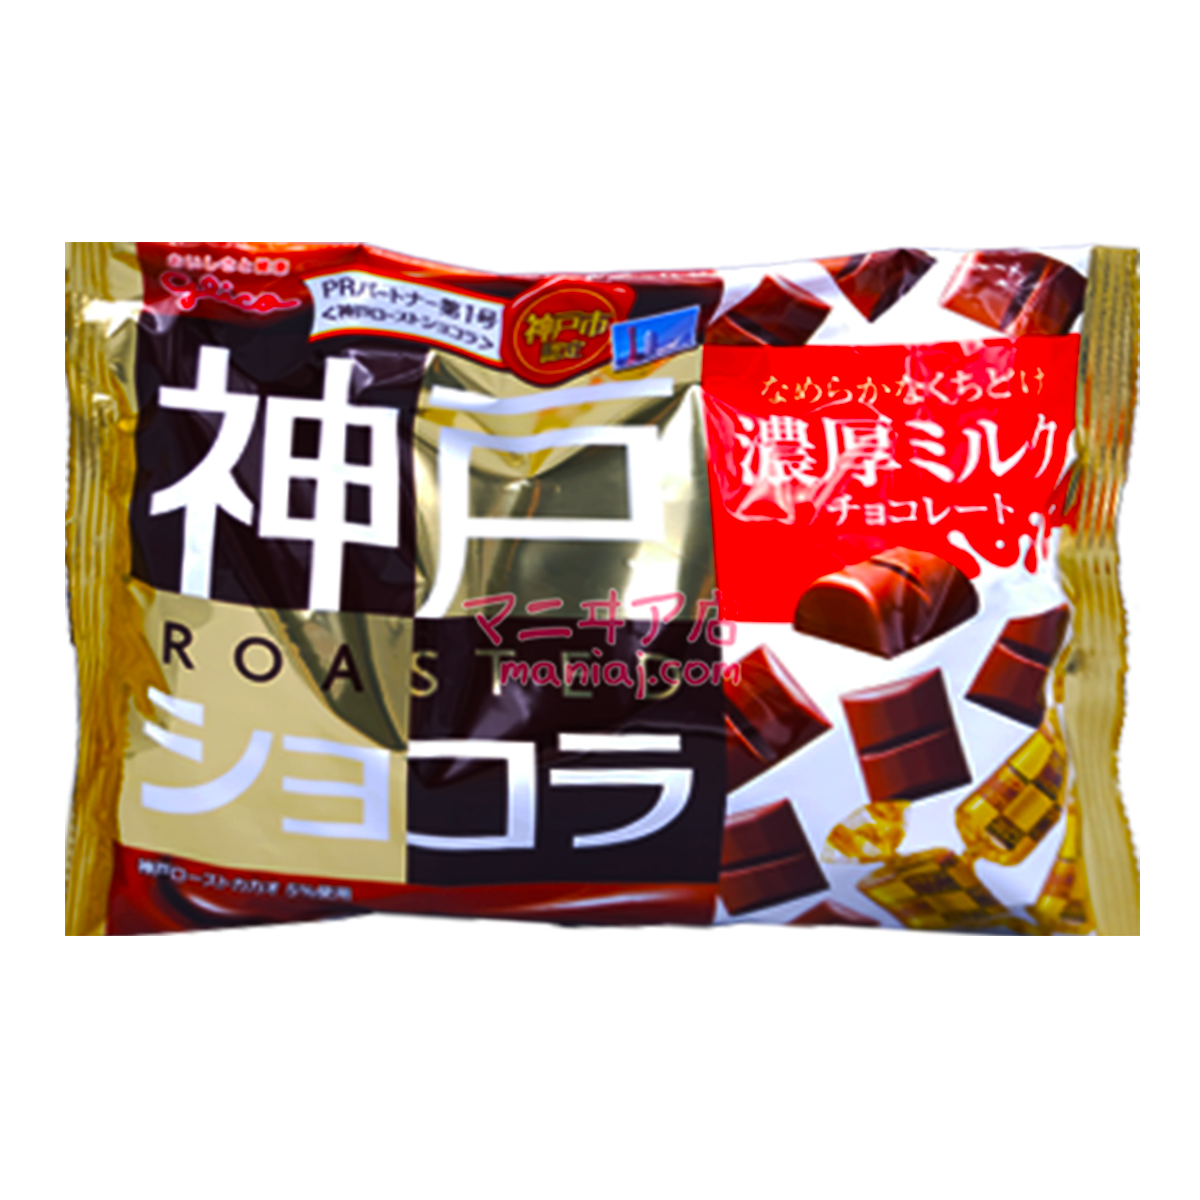 神戸ロースト濃厚ミルクチョコレート